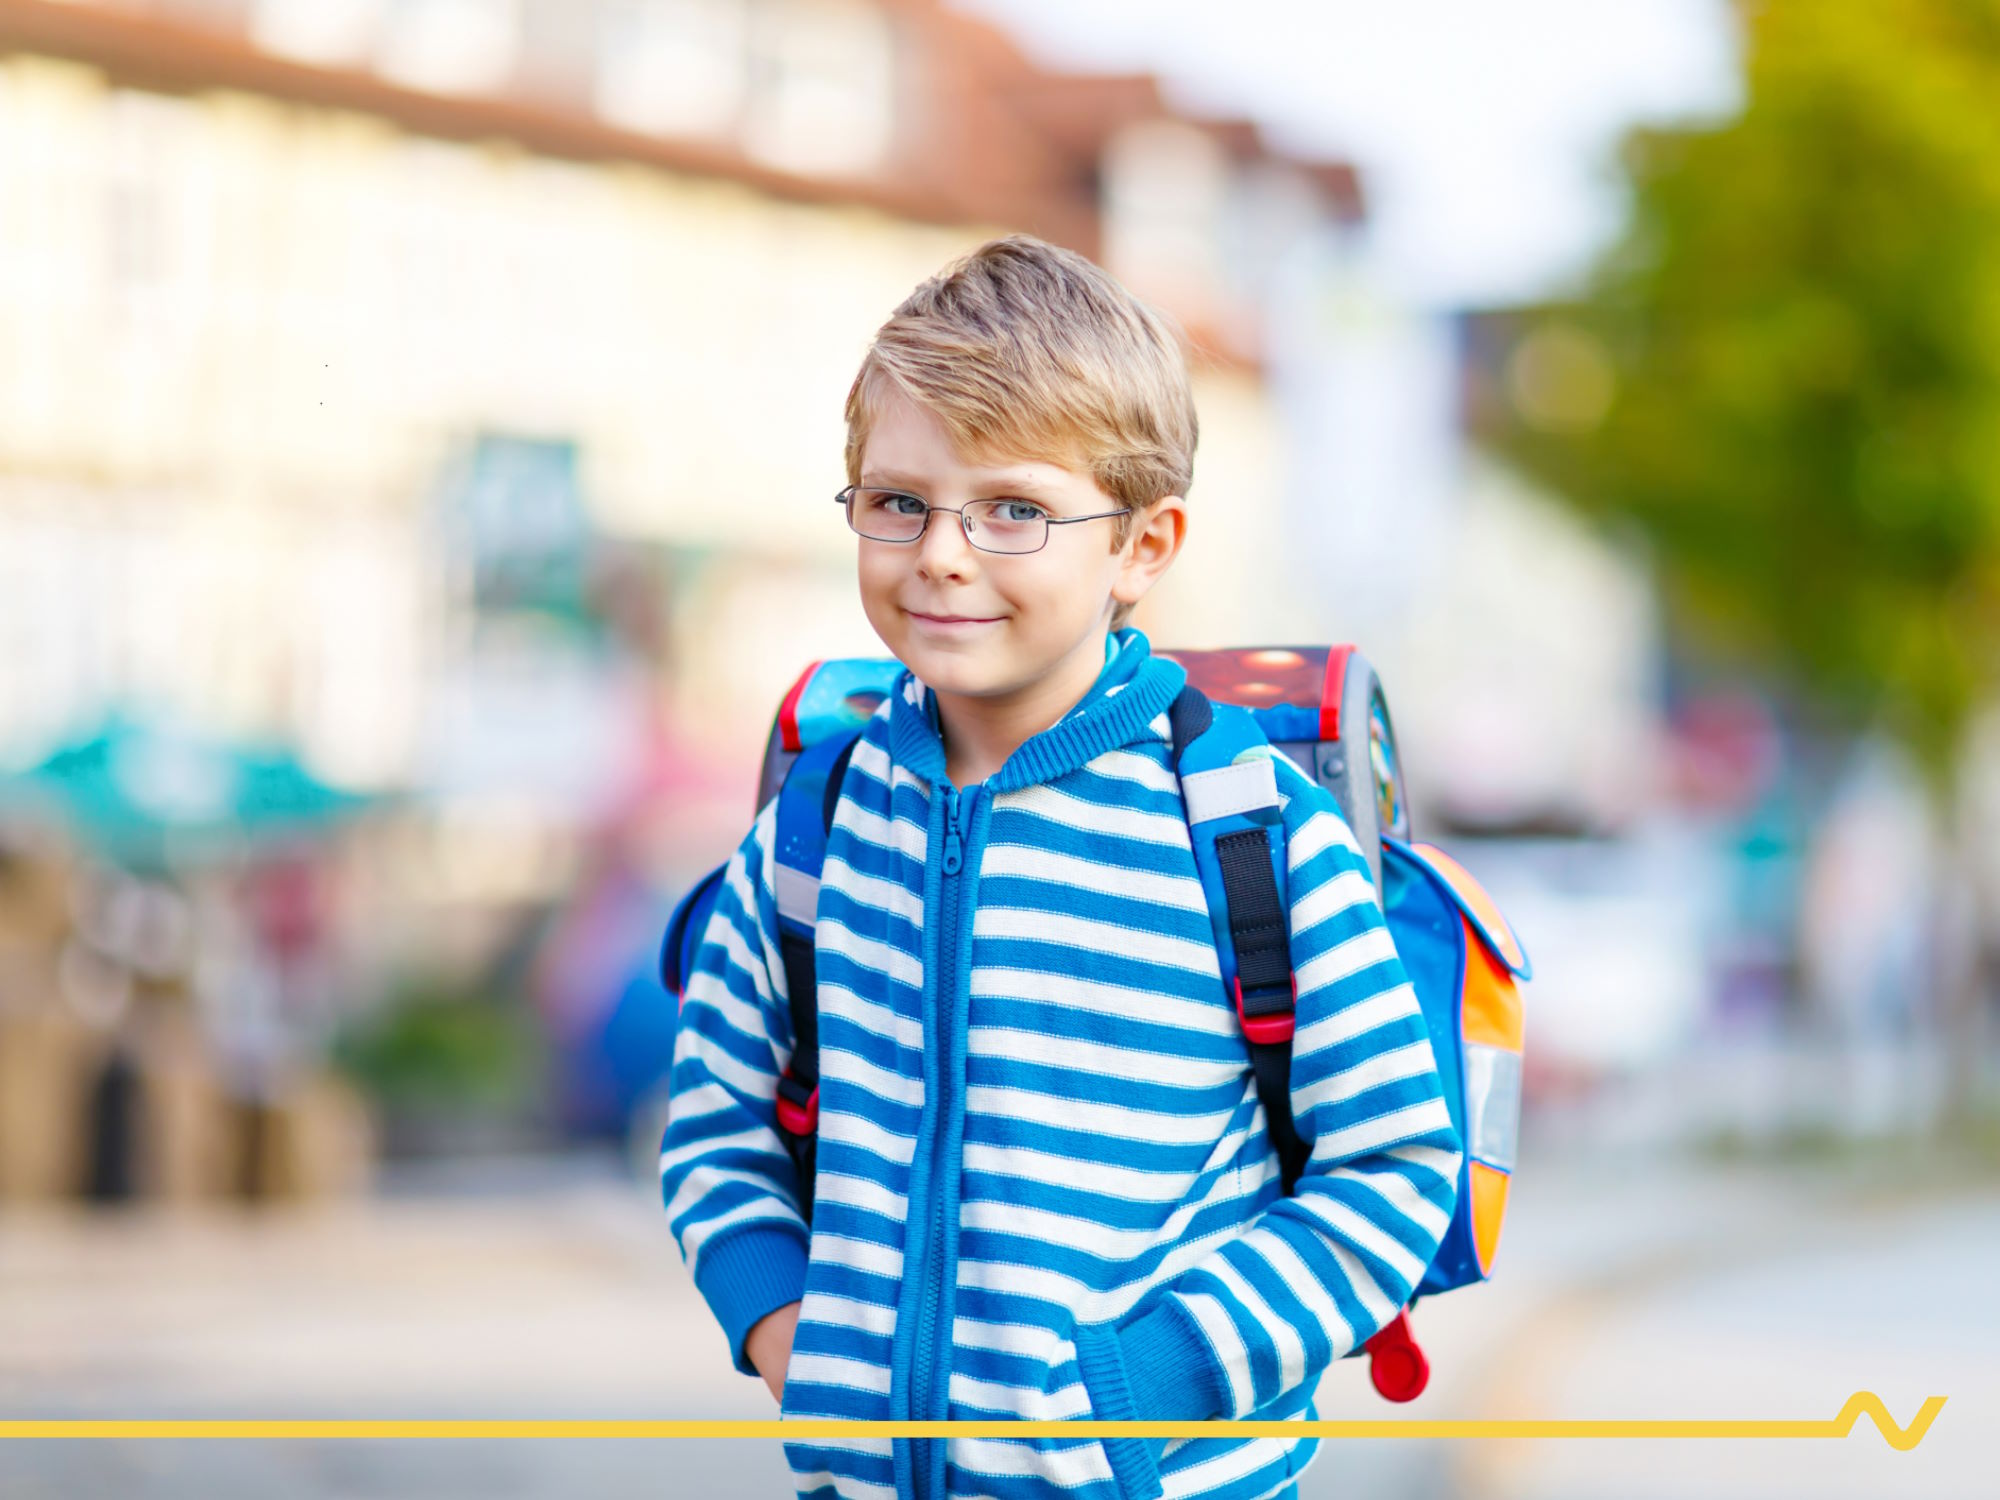 Vor der Volksschule: Schulbub mit blau-weiß-gestreiftem Pullover und Schultasche blickt in Richtung Kamera.